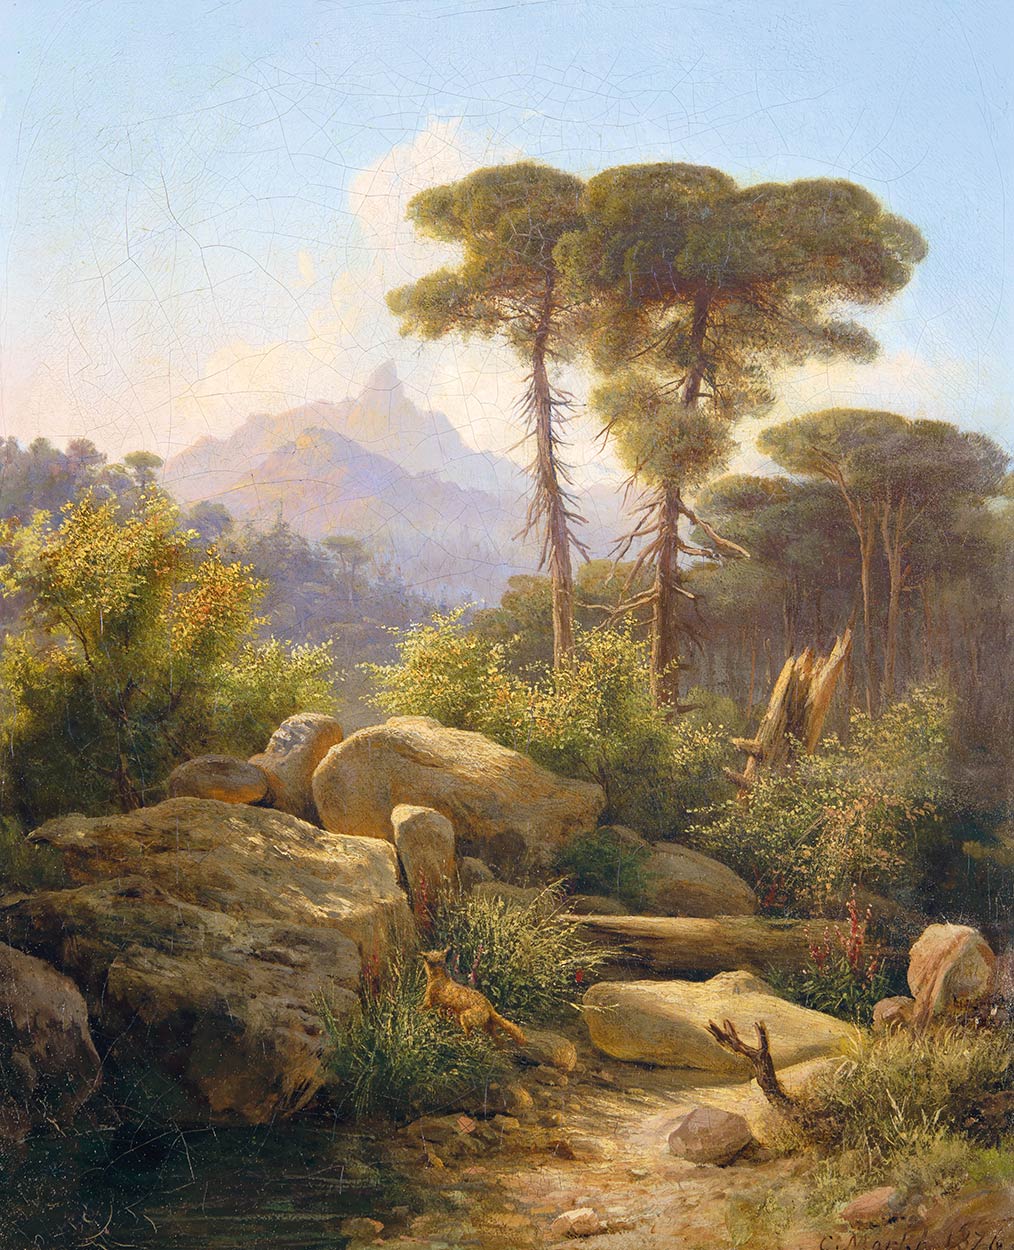 Markó Károly, Ifj. (1822 - 1891) Rocky landscape, 1876